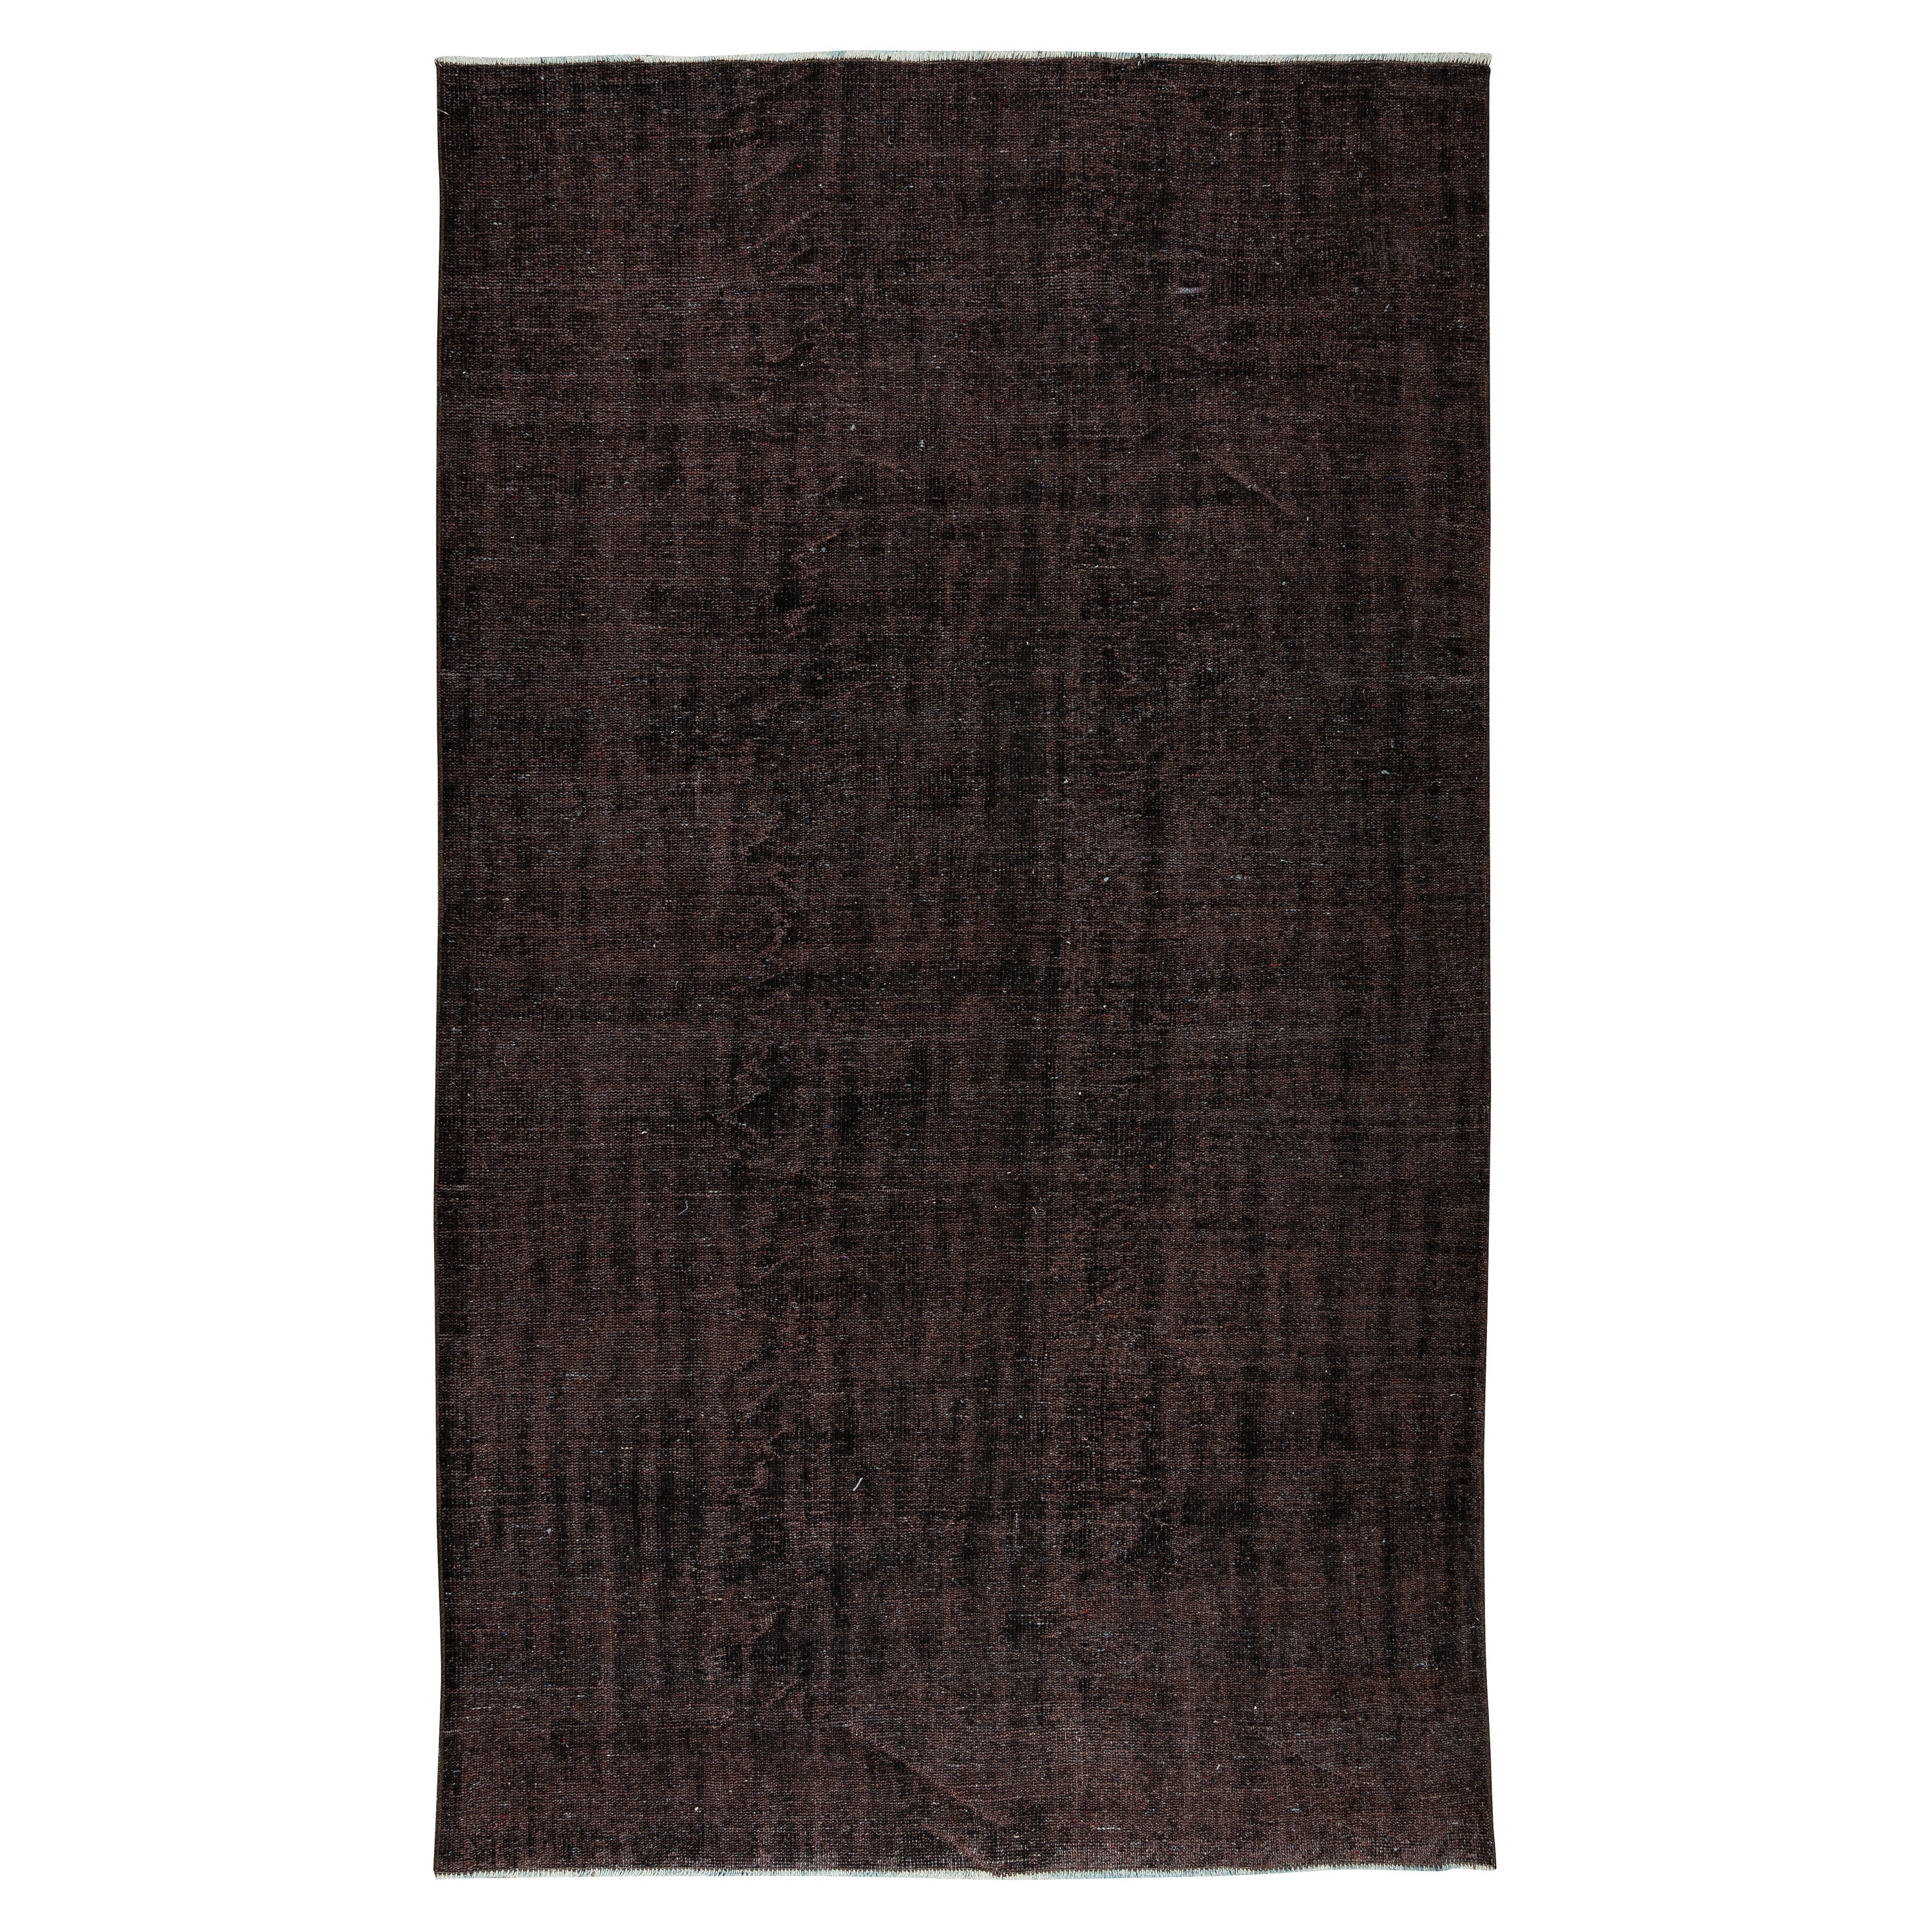 5.8x10 Ft Handmade Vintage Türkische Wolle Teppich in Solid Brown 4 Modern Interiors im Angebot